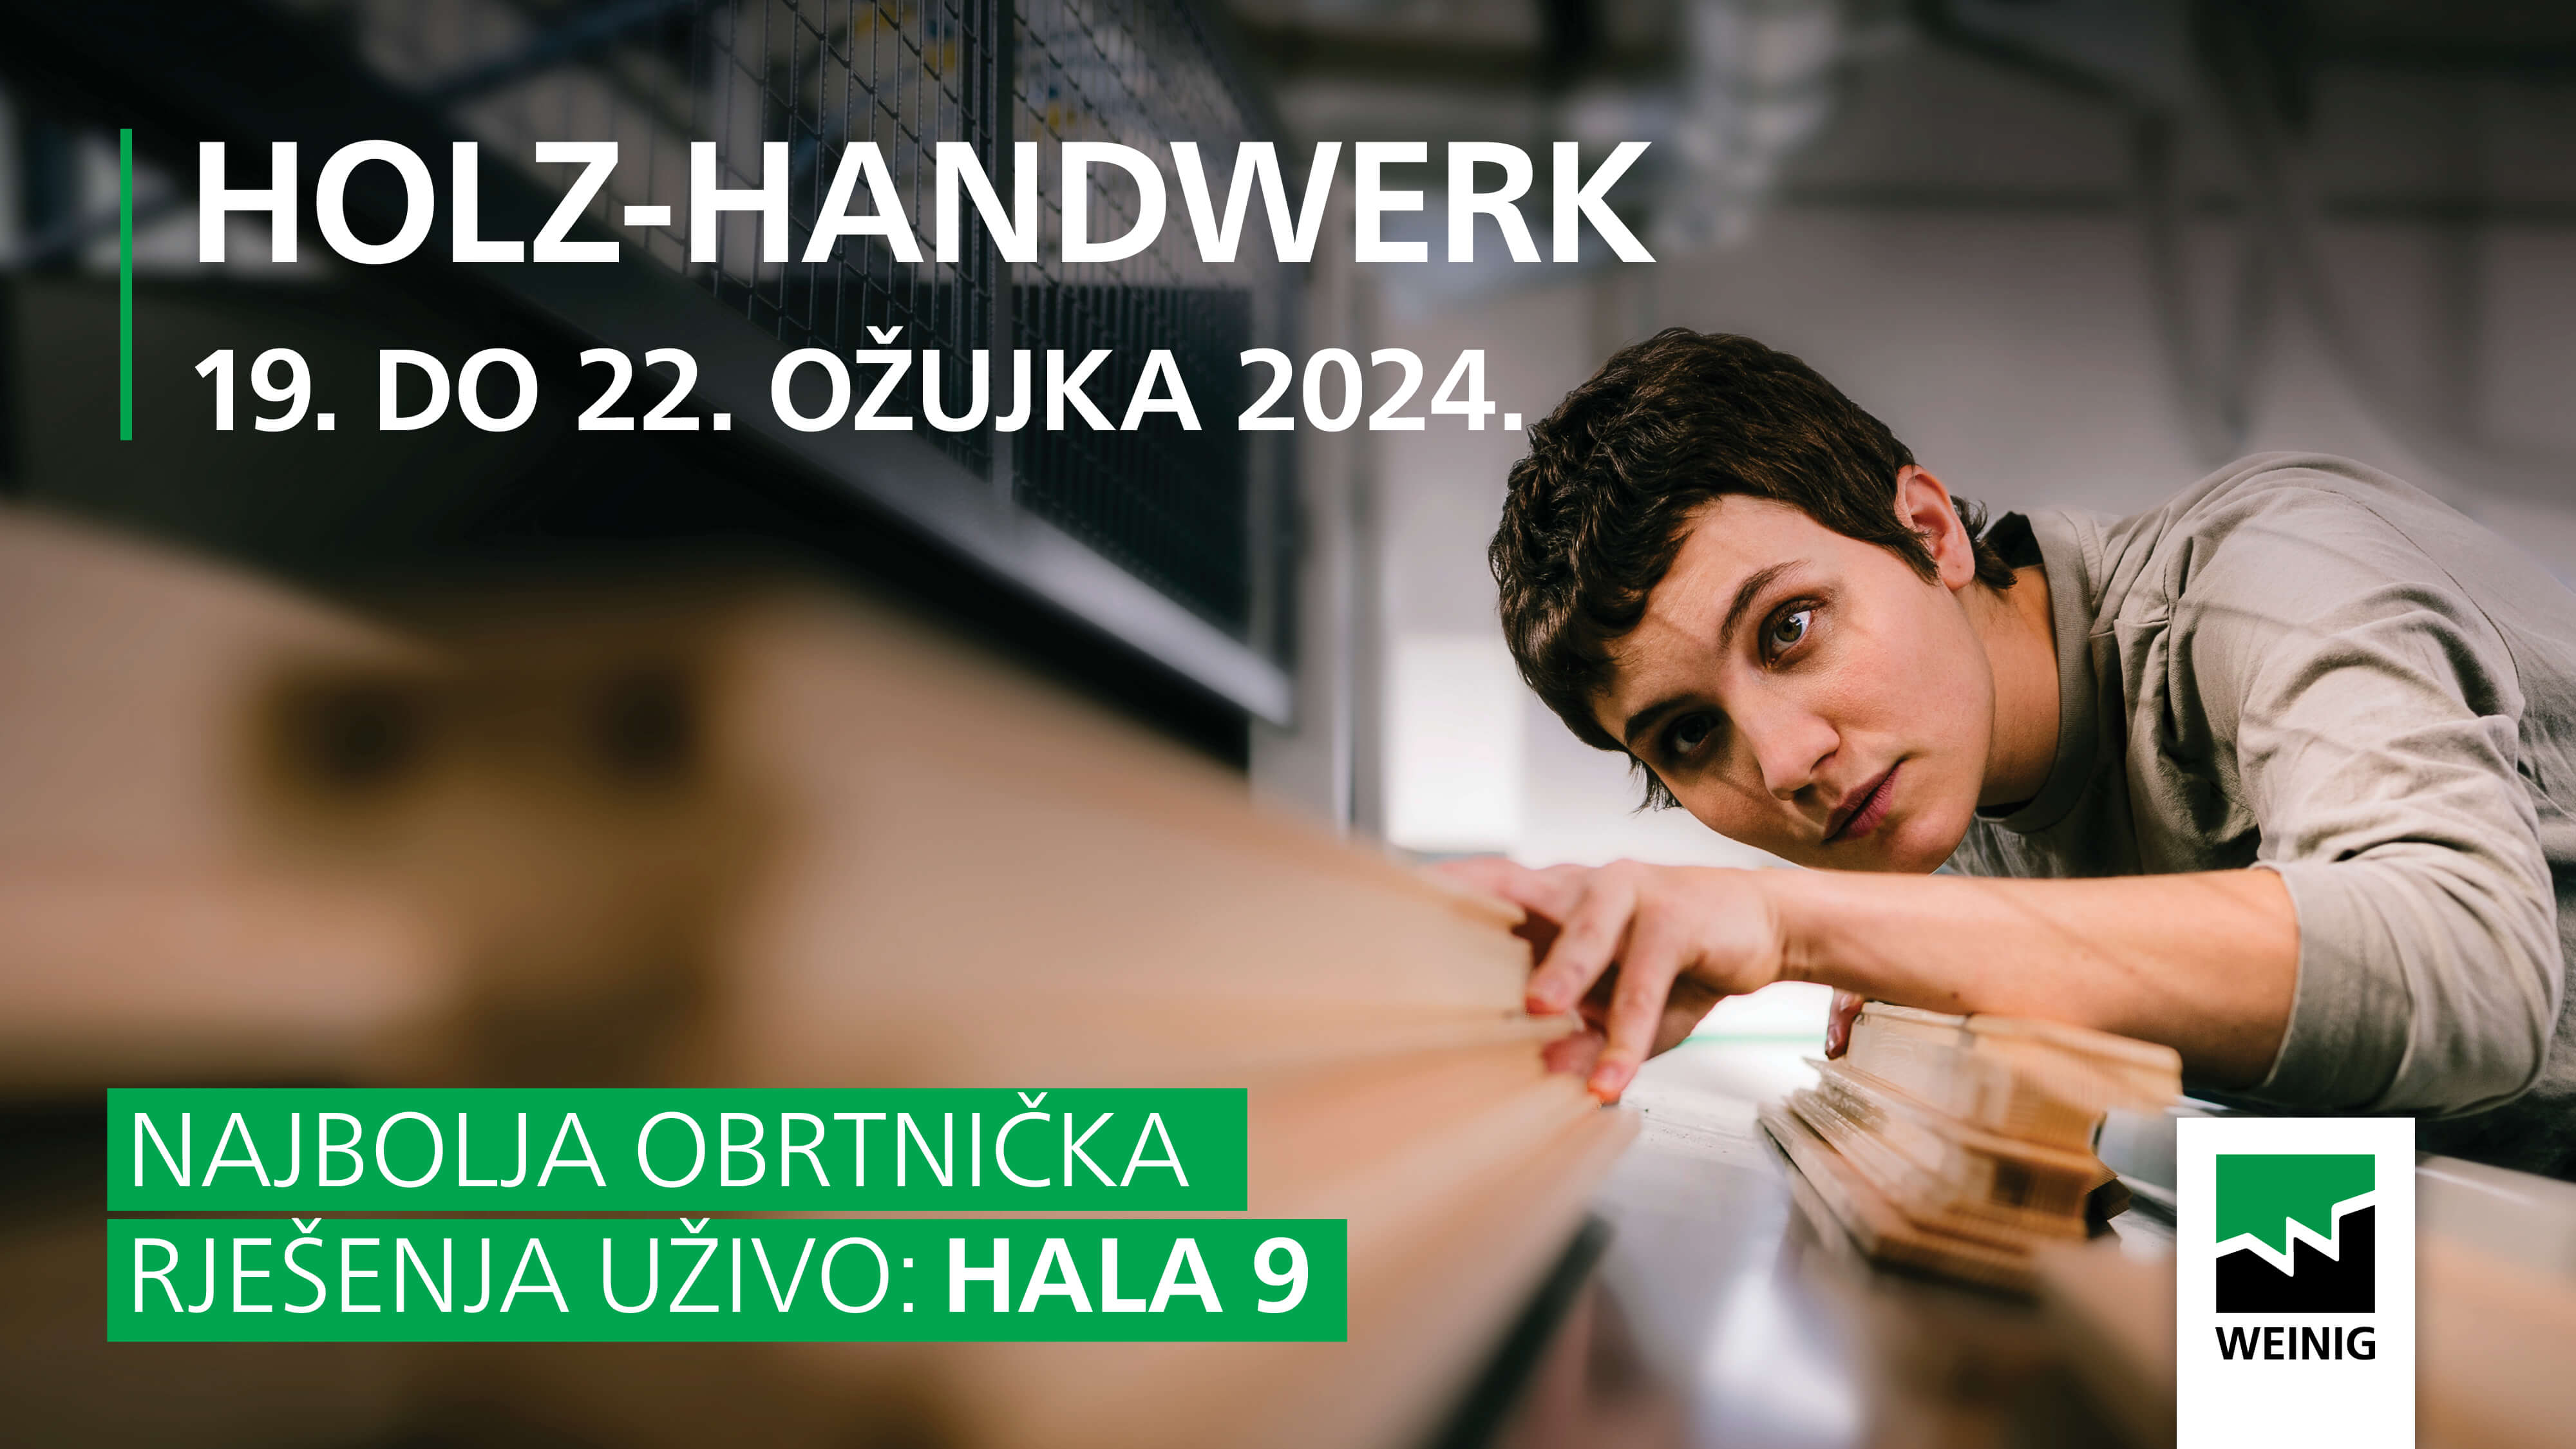 Dobrodošli na Holz-Handwerk i Fensterbau Frontale 2024.